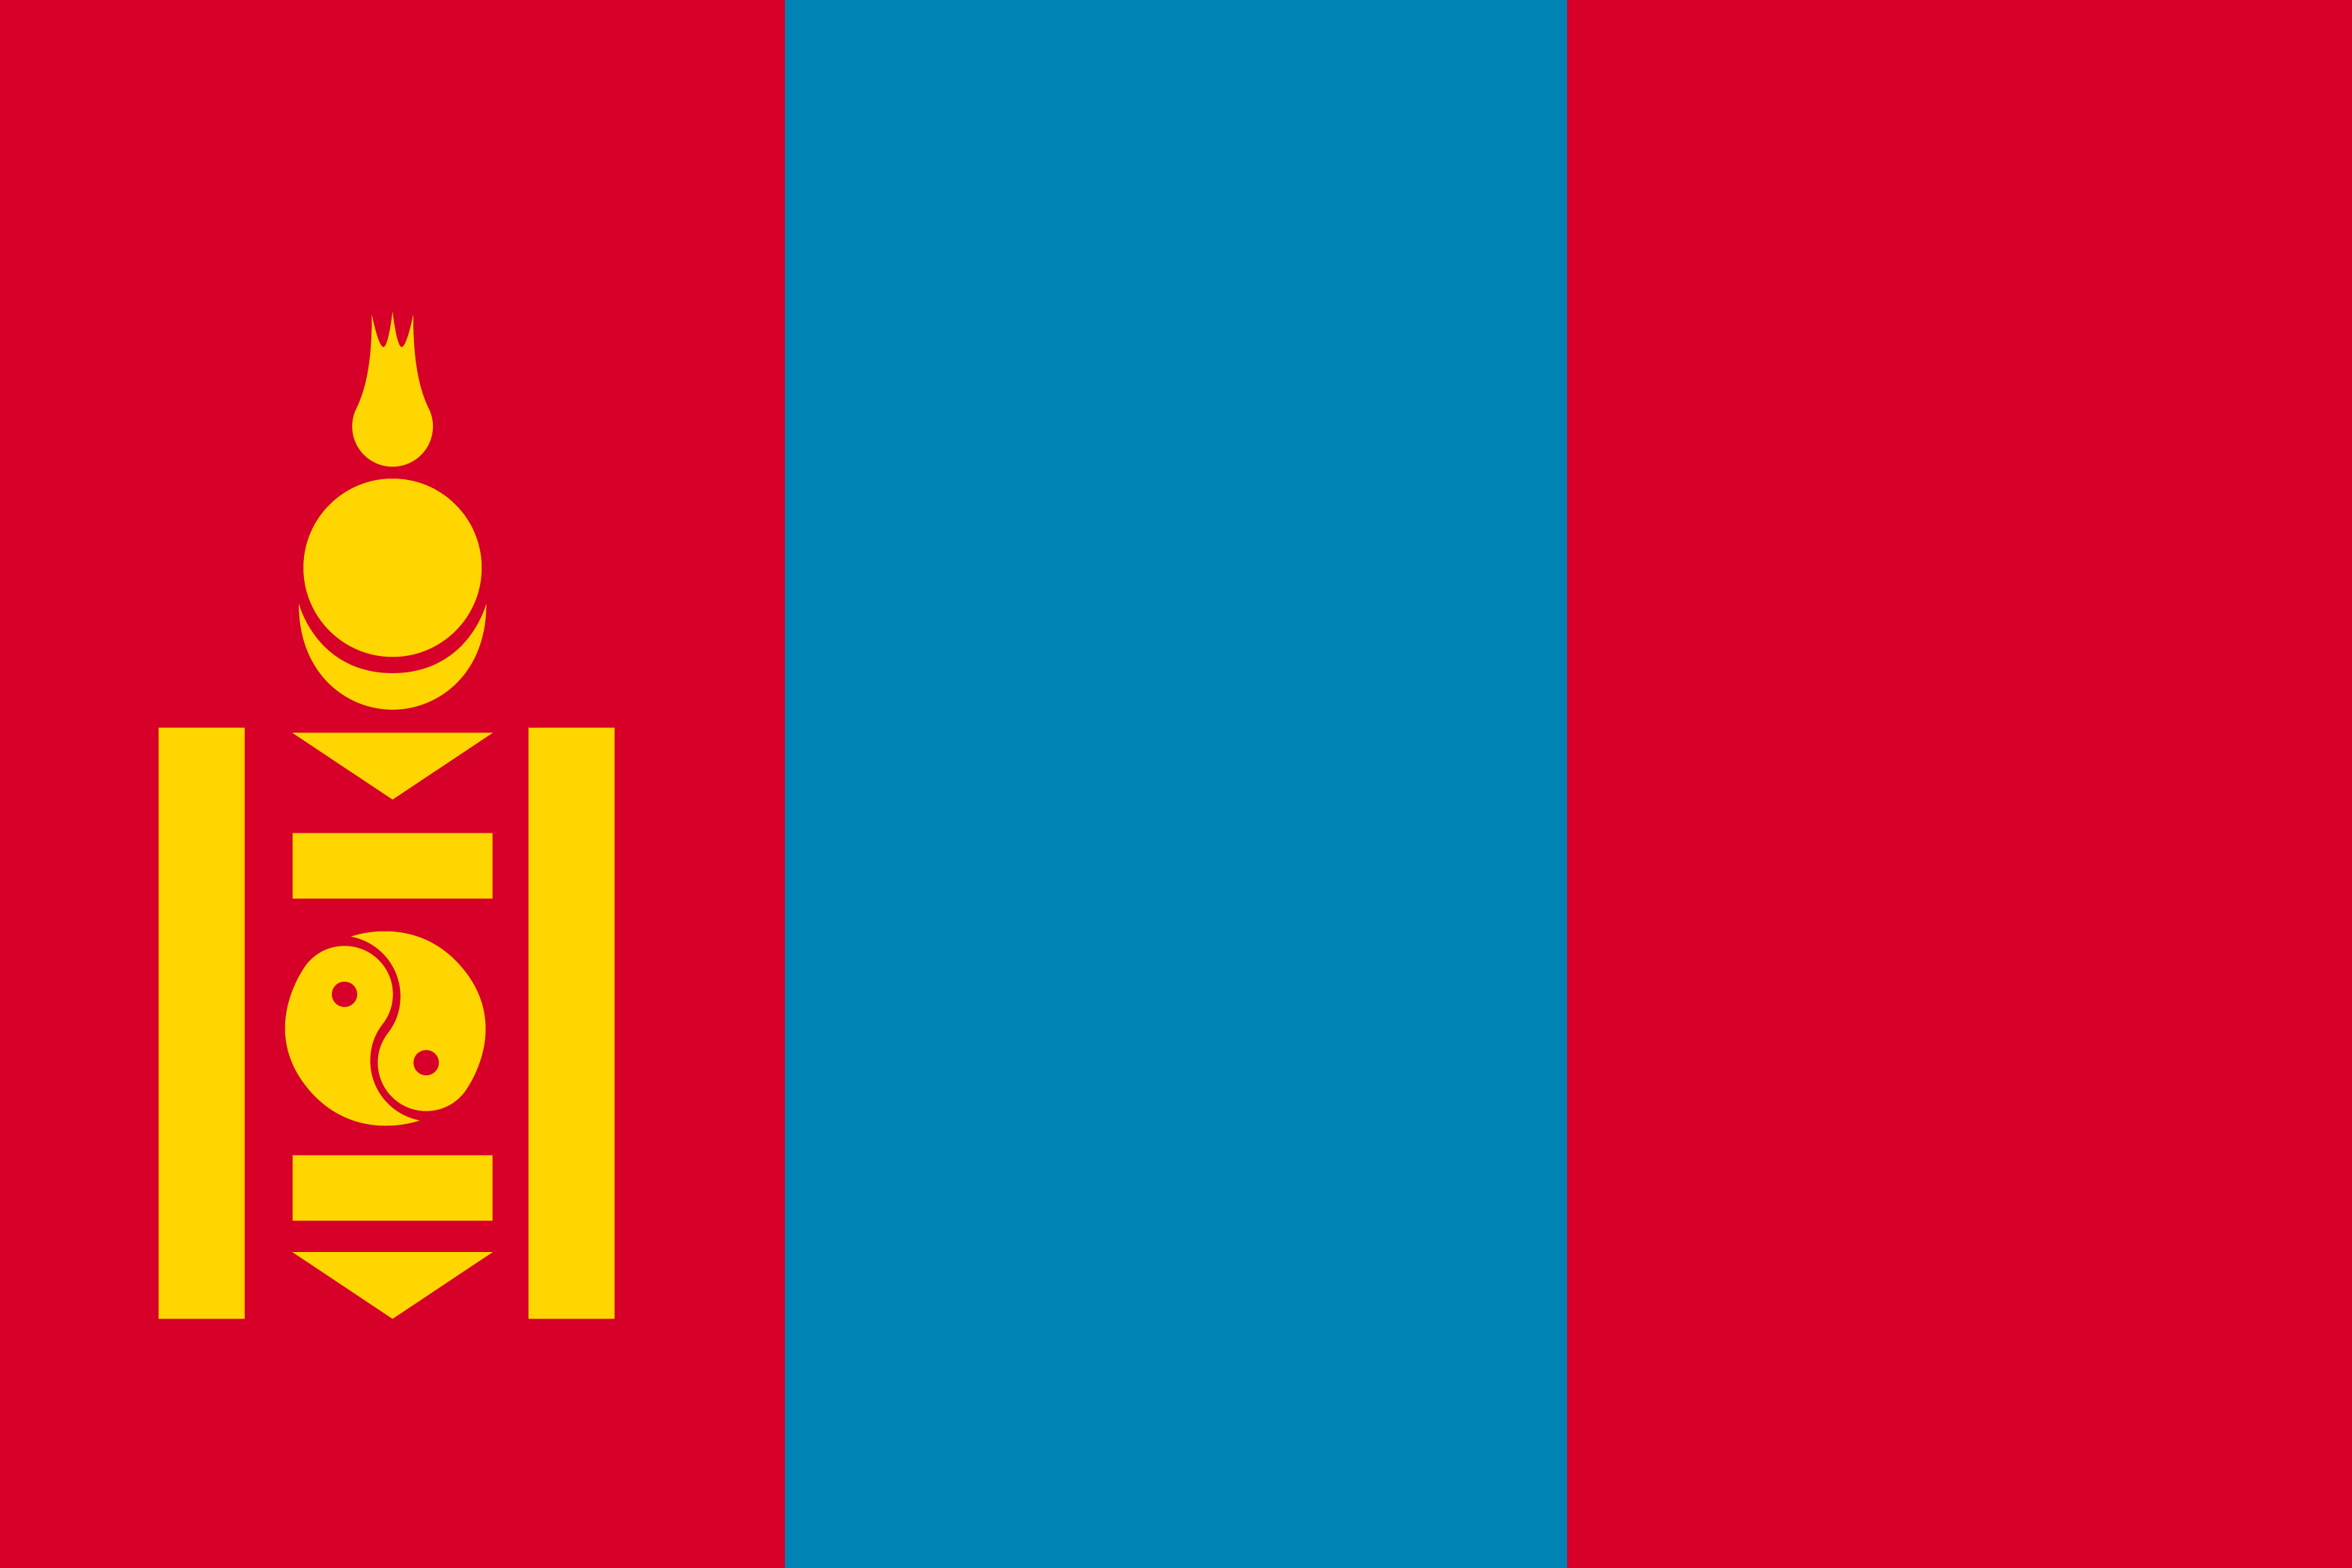 モンゴル国旗